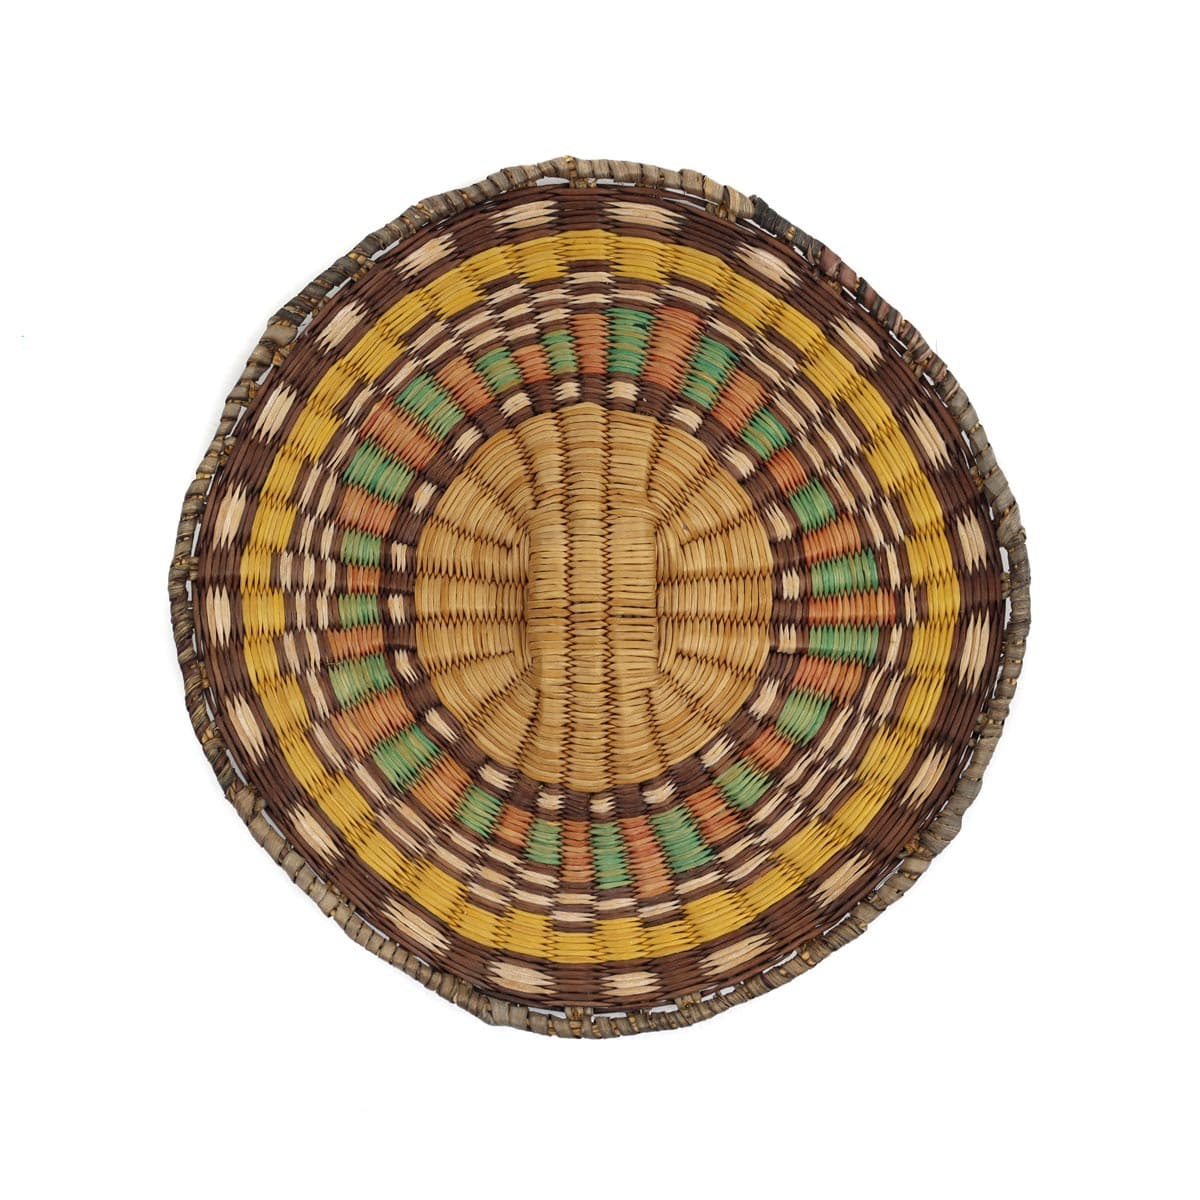 Hopi Polychrome Wicker Plaque c. 1960s, 9.5" diameter (SK3349) 1